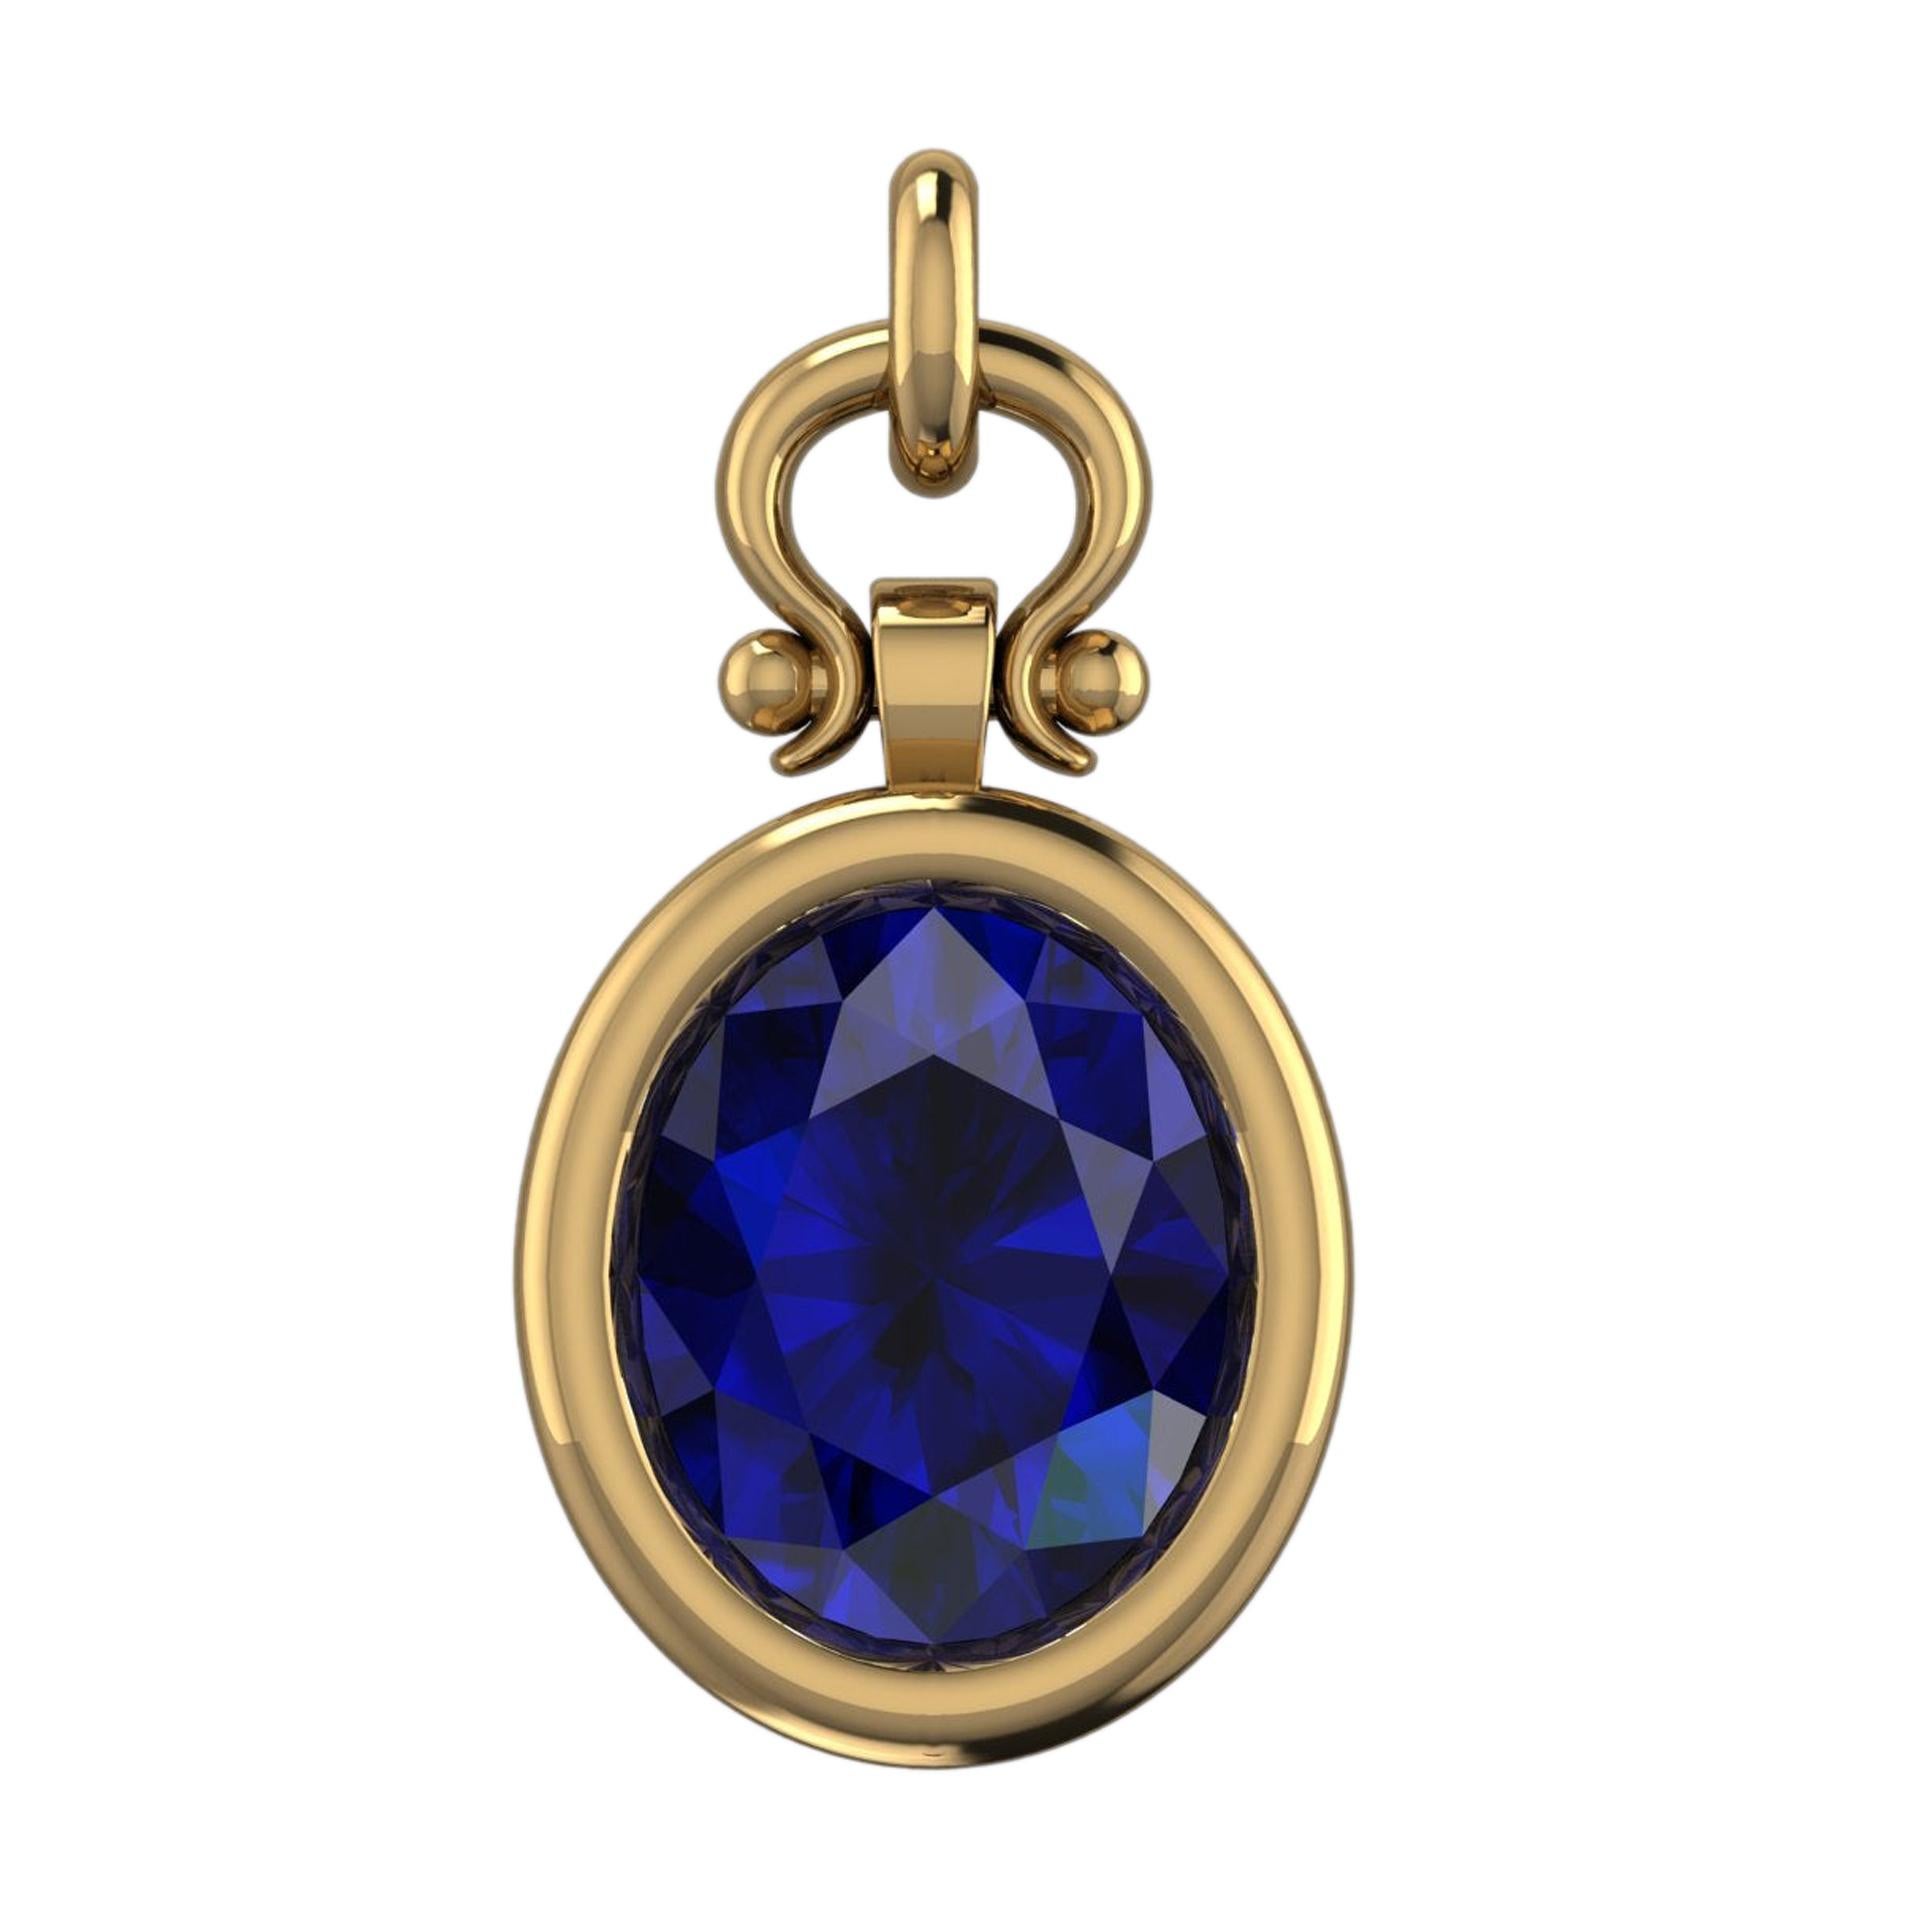 Berberyn Certified 3.89 Carat Oval Blue Sapphire Custom Pendant Necklace in 18k For Sale